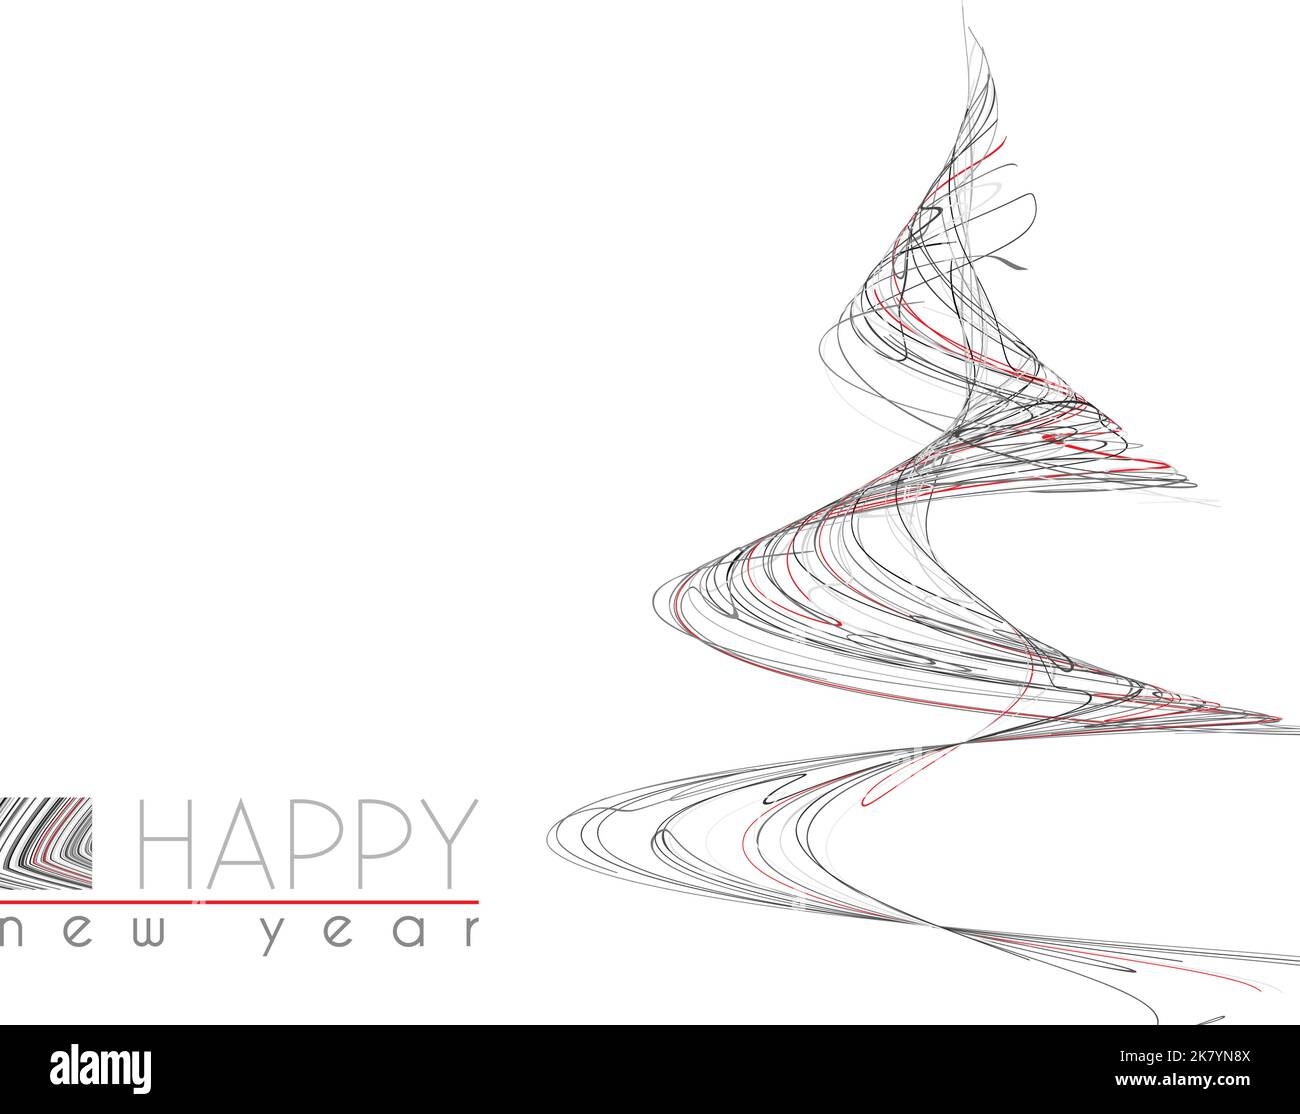 Modello di minimal Happy New Year card con un albero di Natale insolito di sottili strisce nere, grigie e rosse. Layout grafico vettoriale semplice Illustrazione Vettoriale